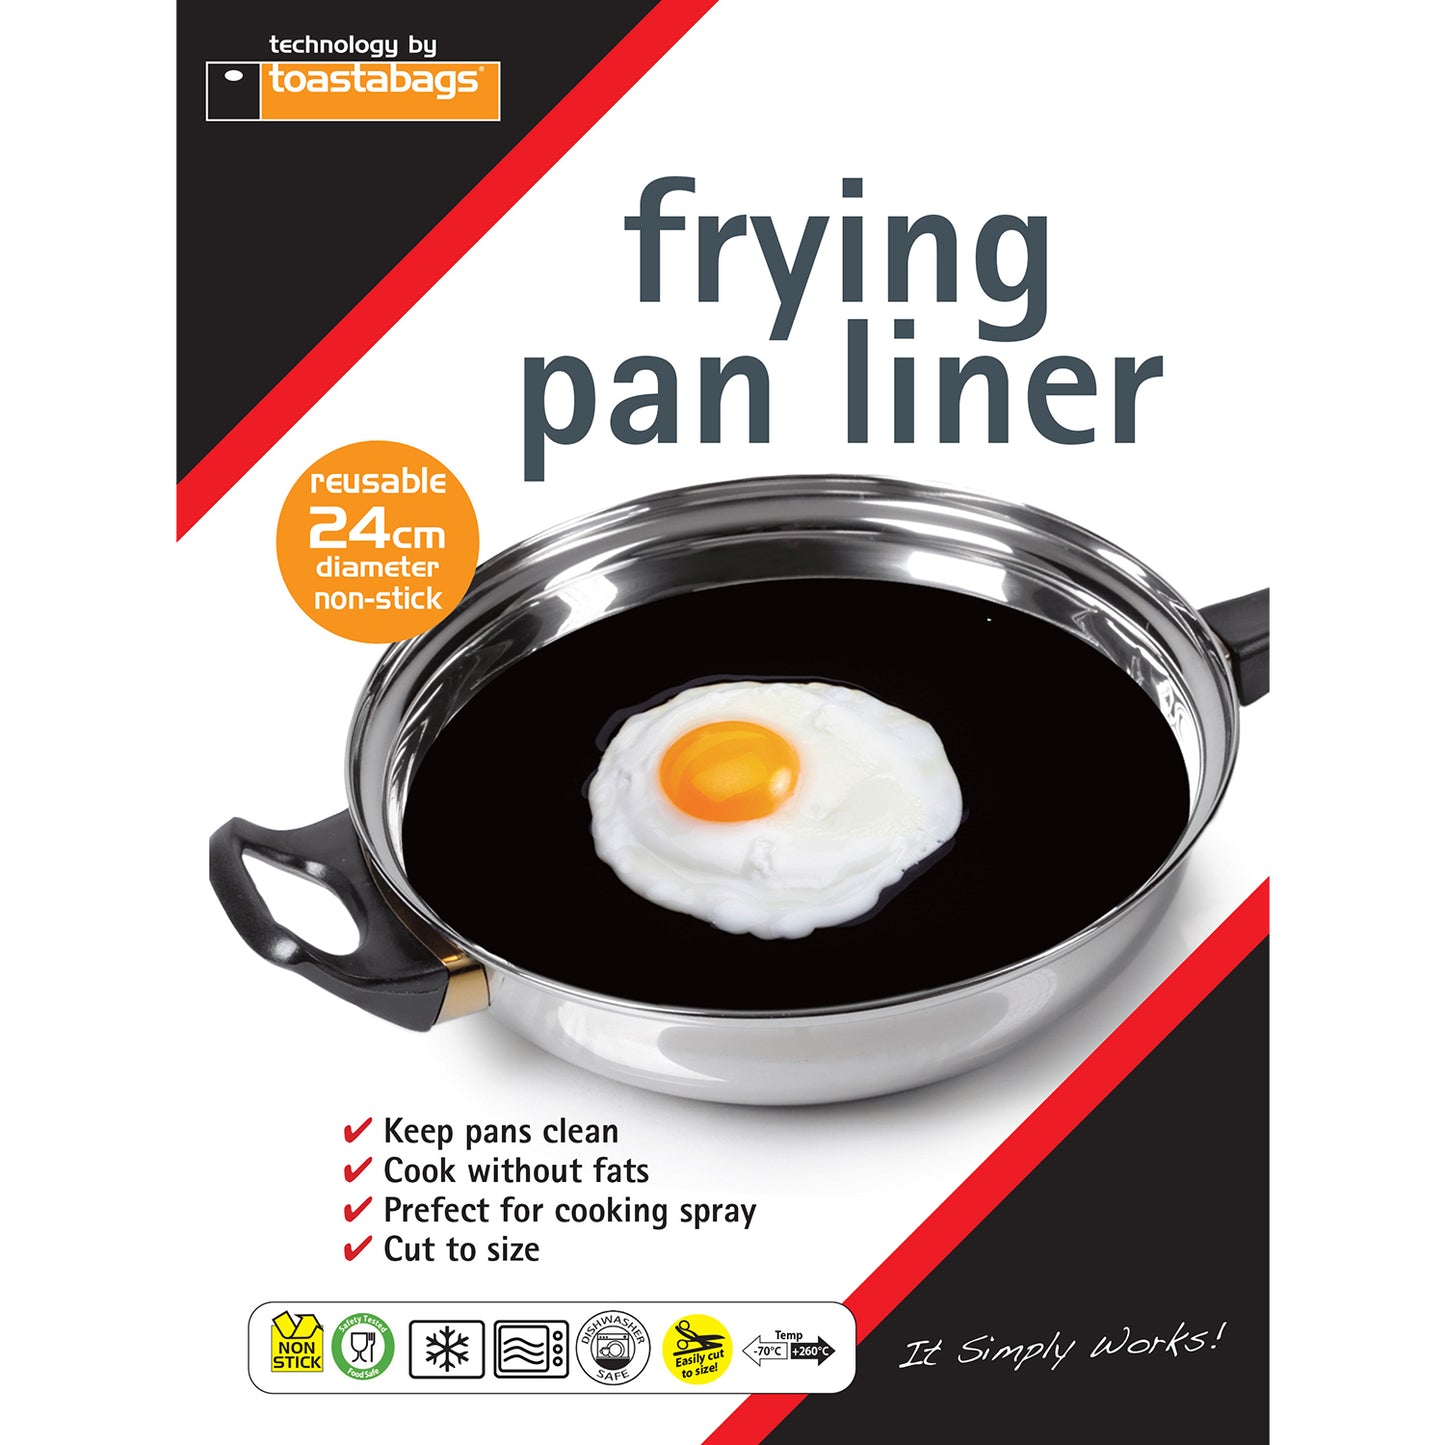 Frying Pan liner